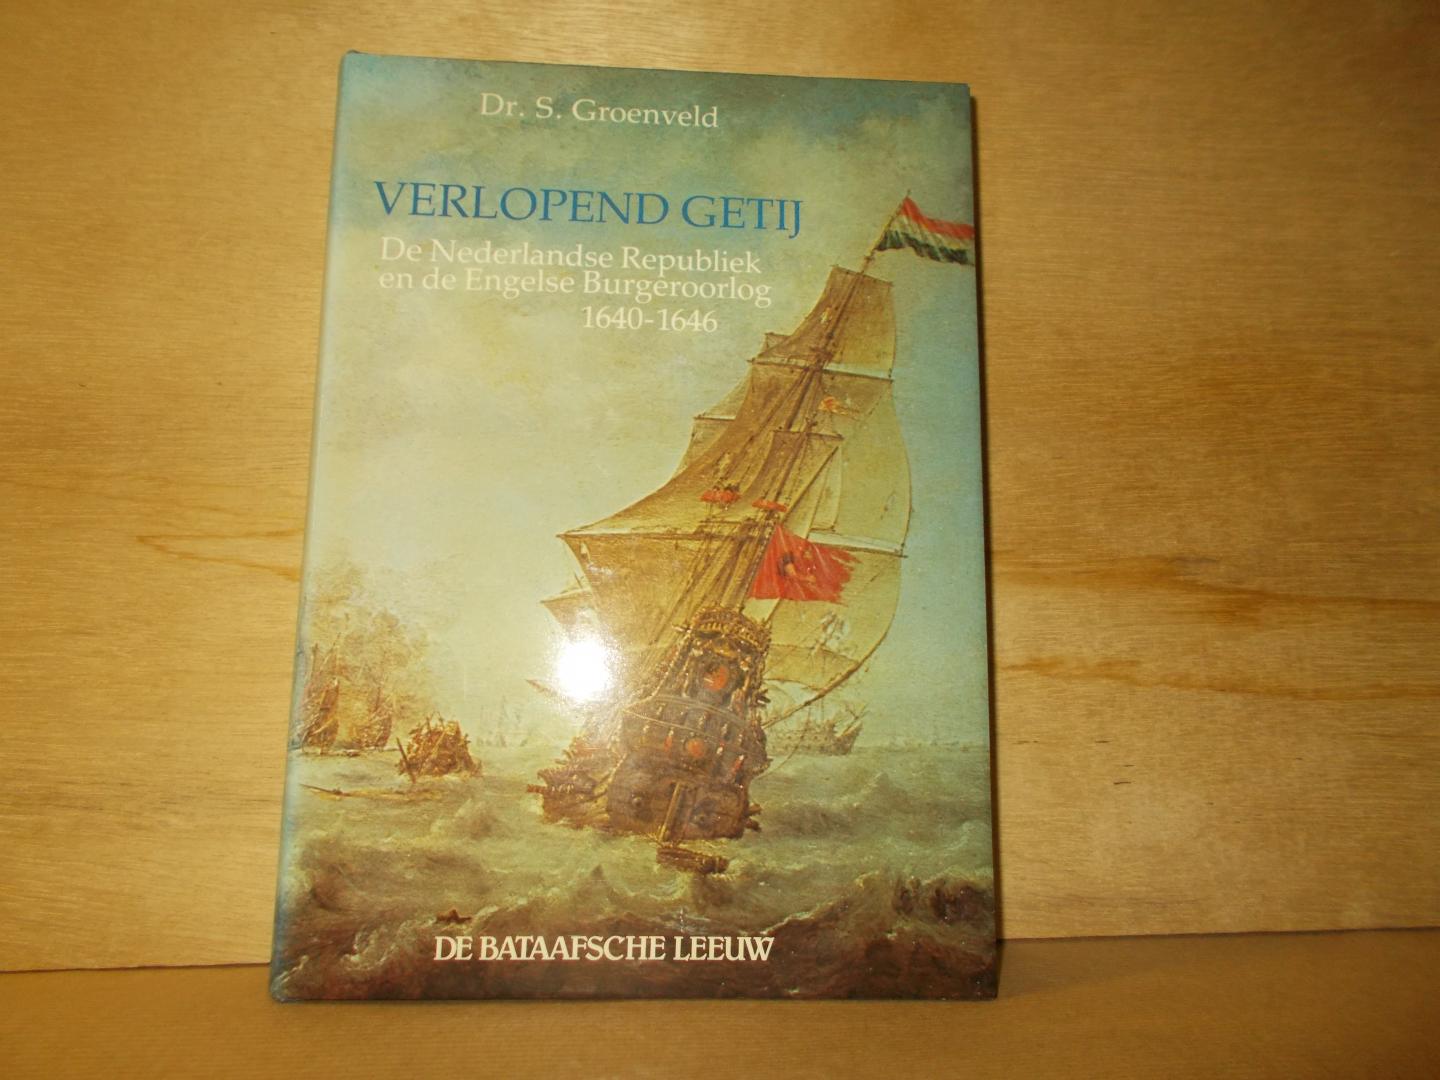 Groenveld, S. - Verlopend getij de Nederlandse Republiek en de Engelse burgeroorlog 1640-1646